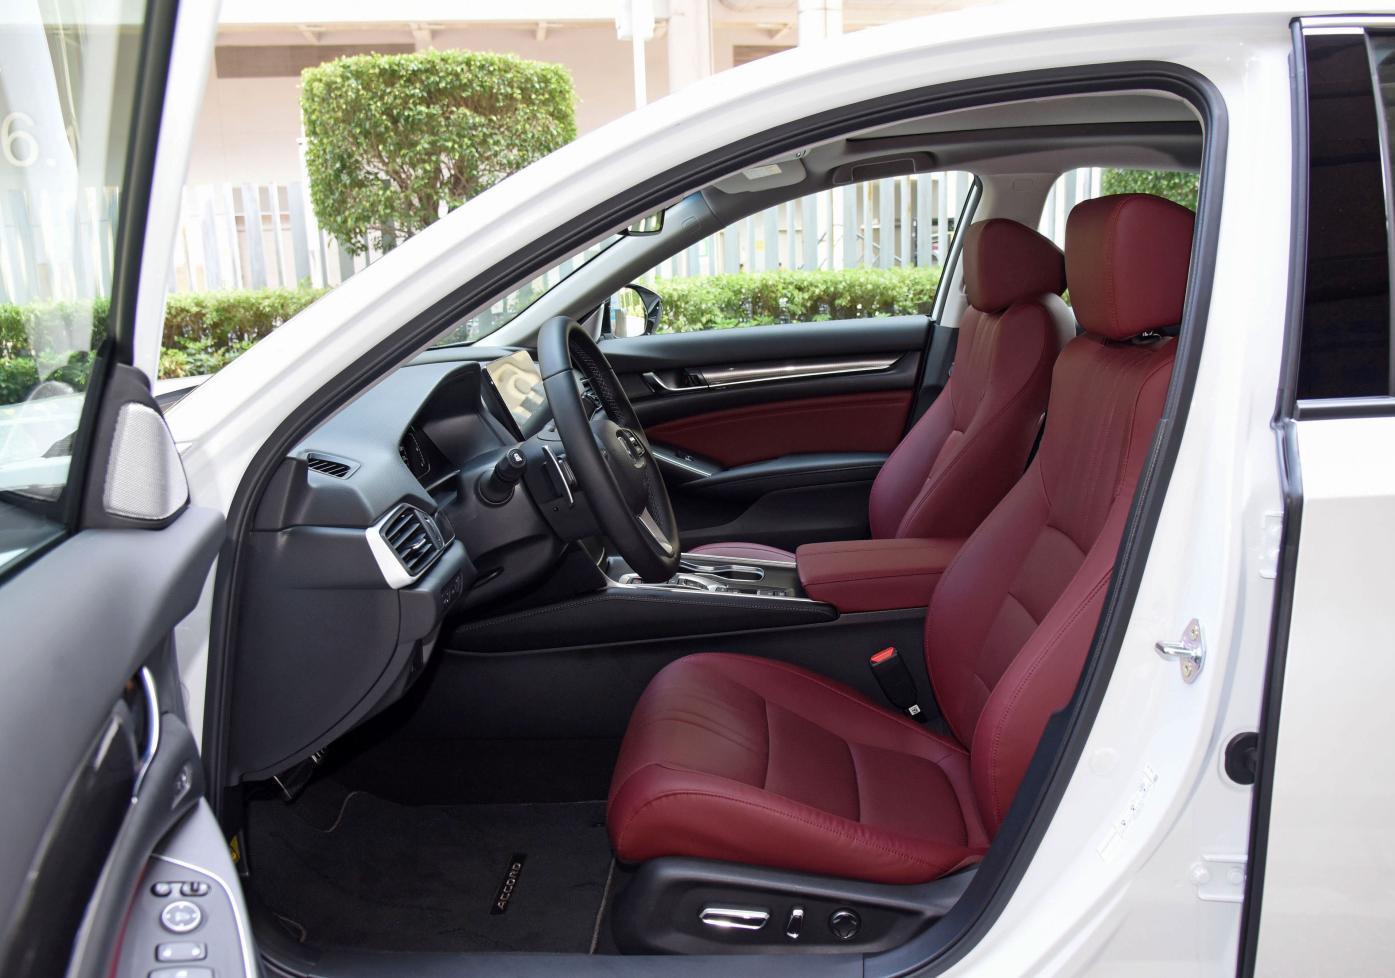 GAC Honda Accord fuel efficent suv Car seat